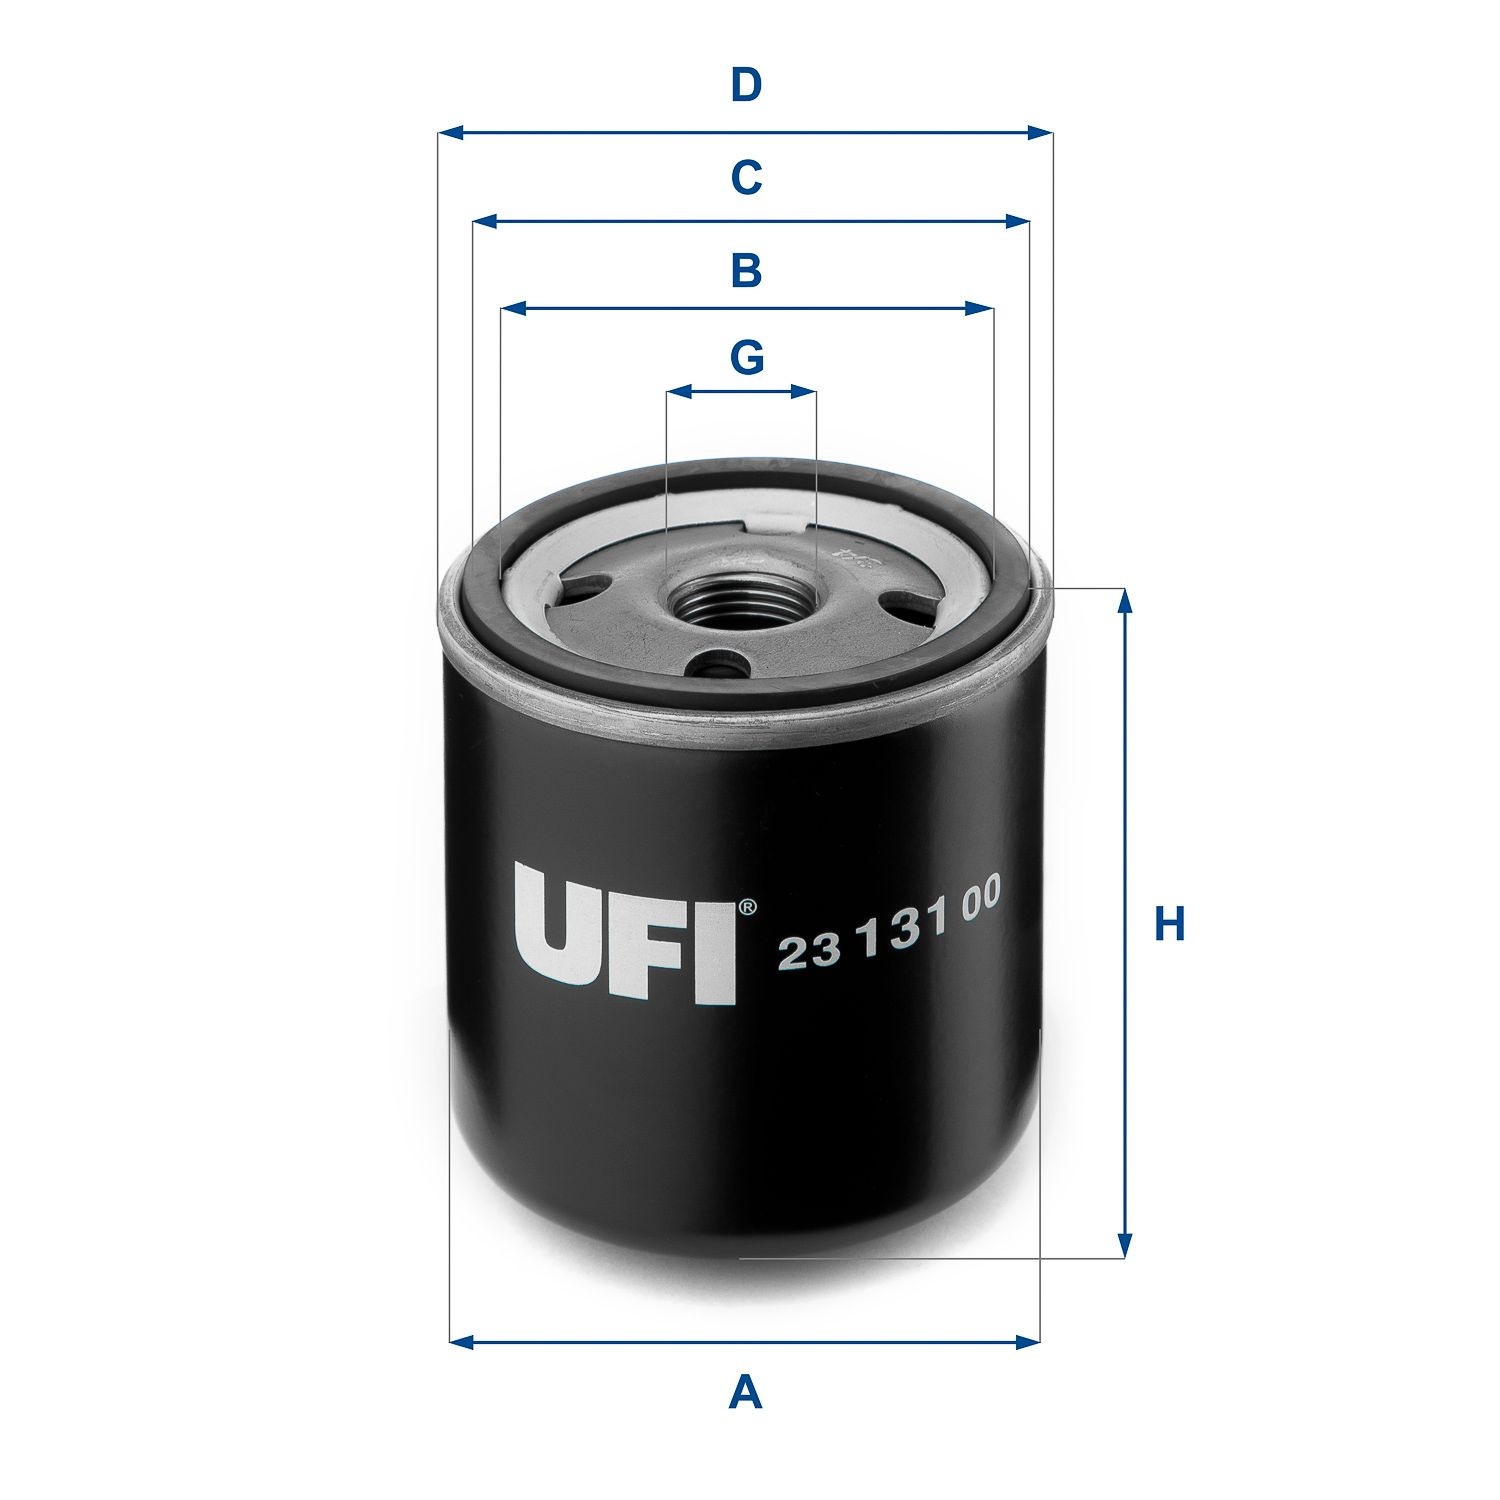 UFI  23.131.00 Olejový filtr R: 76mm, Vnější průměr 2: 71mm, R: 76mm, Vnitřni průměr 2: 61mm, Vnitřni průměr 2: 61mm, Výška: 92mm